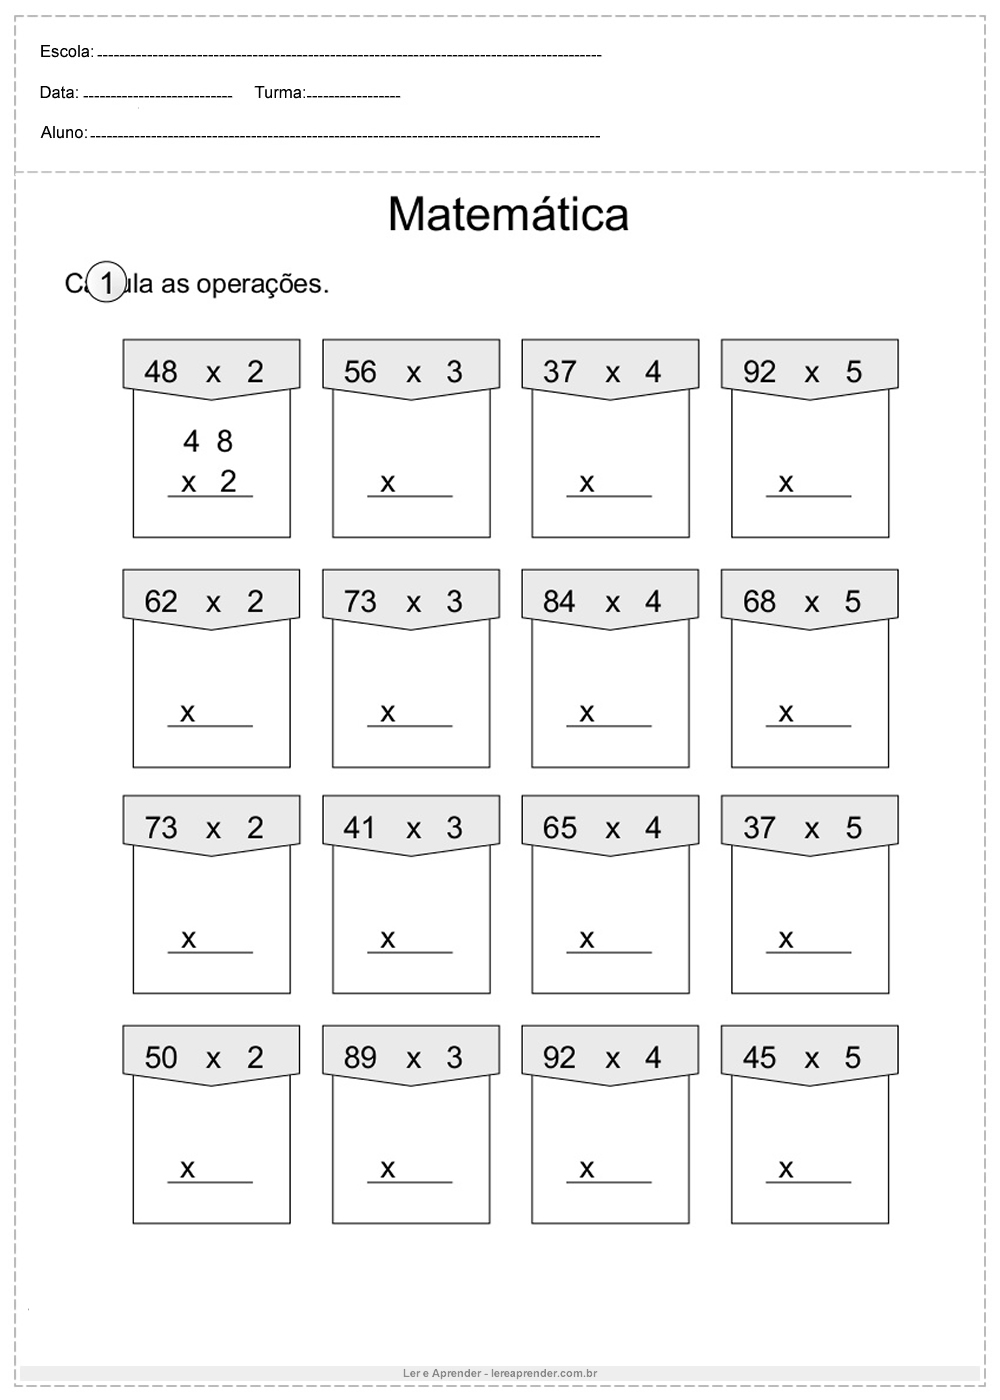 Atividade de matemática 4°ano calcule as operações